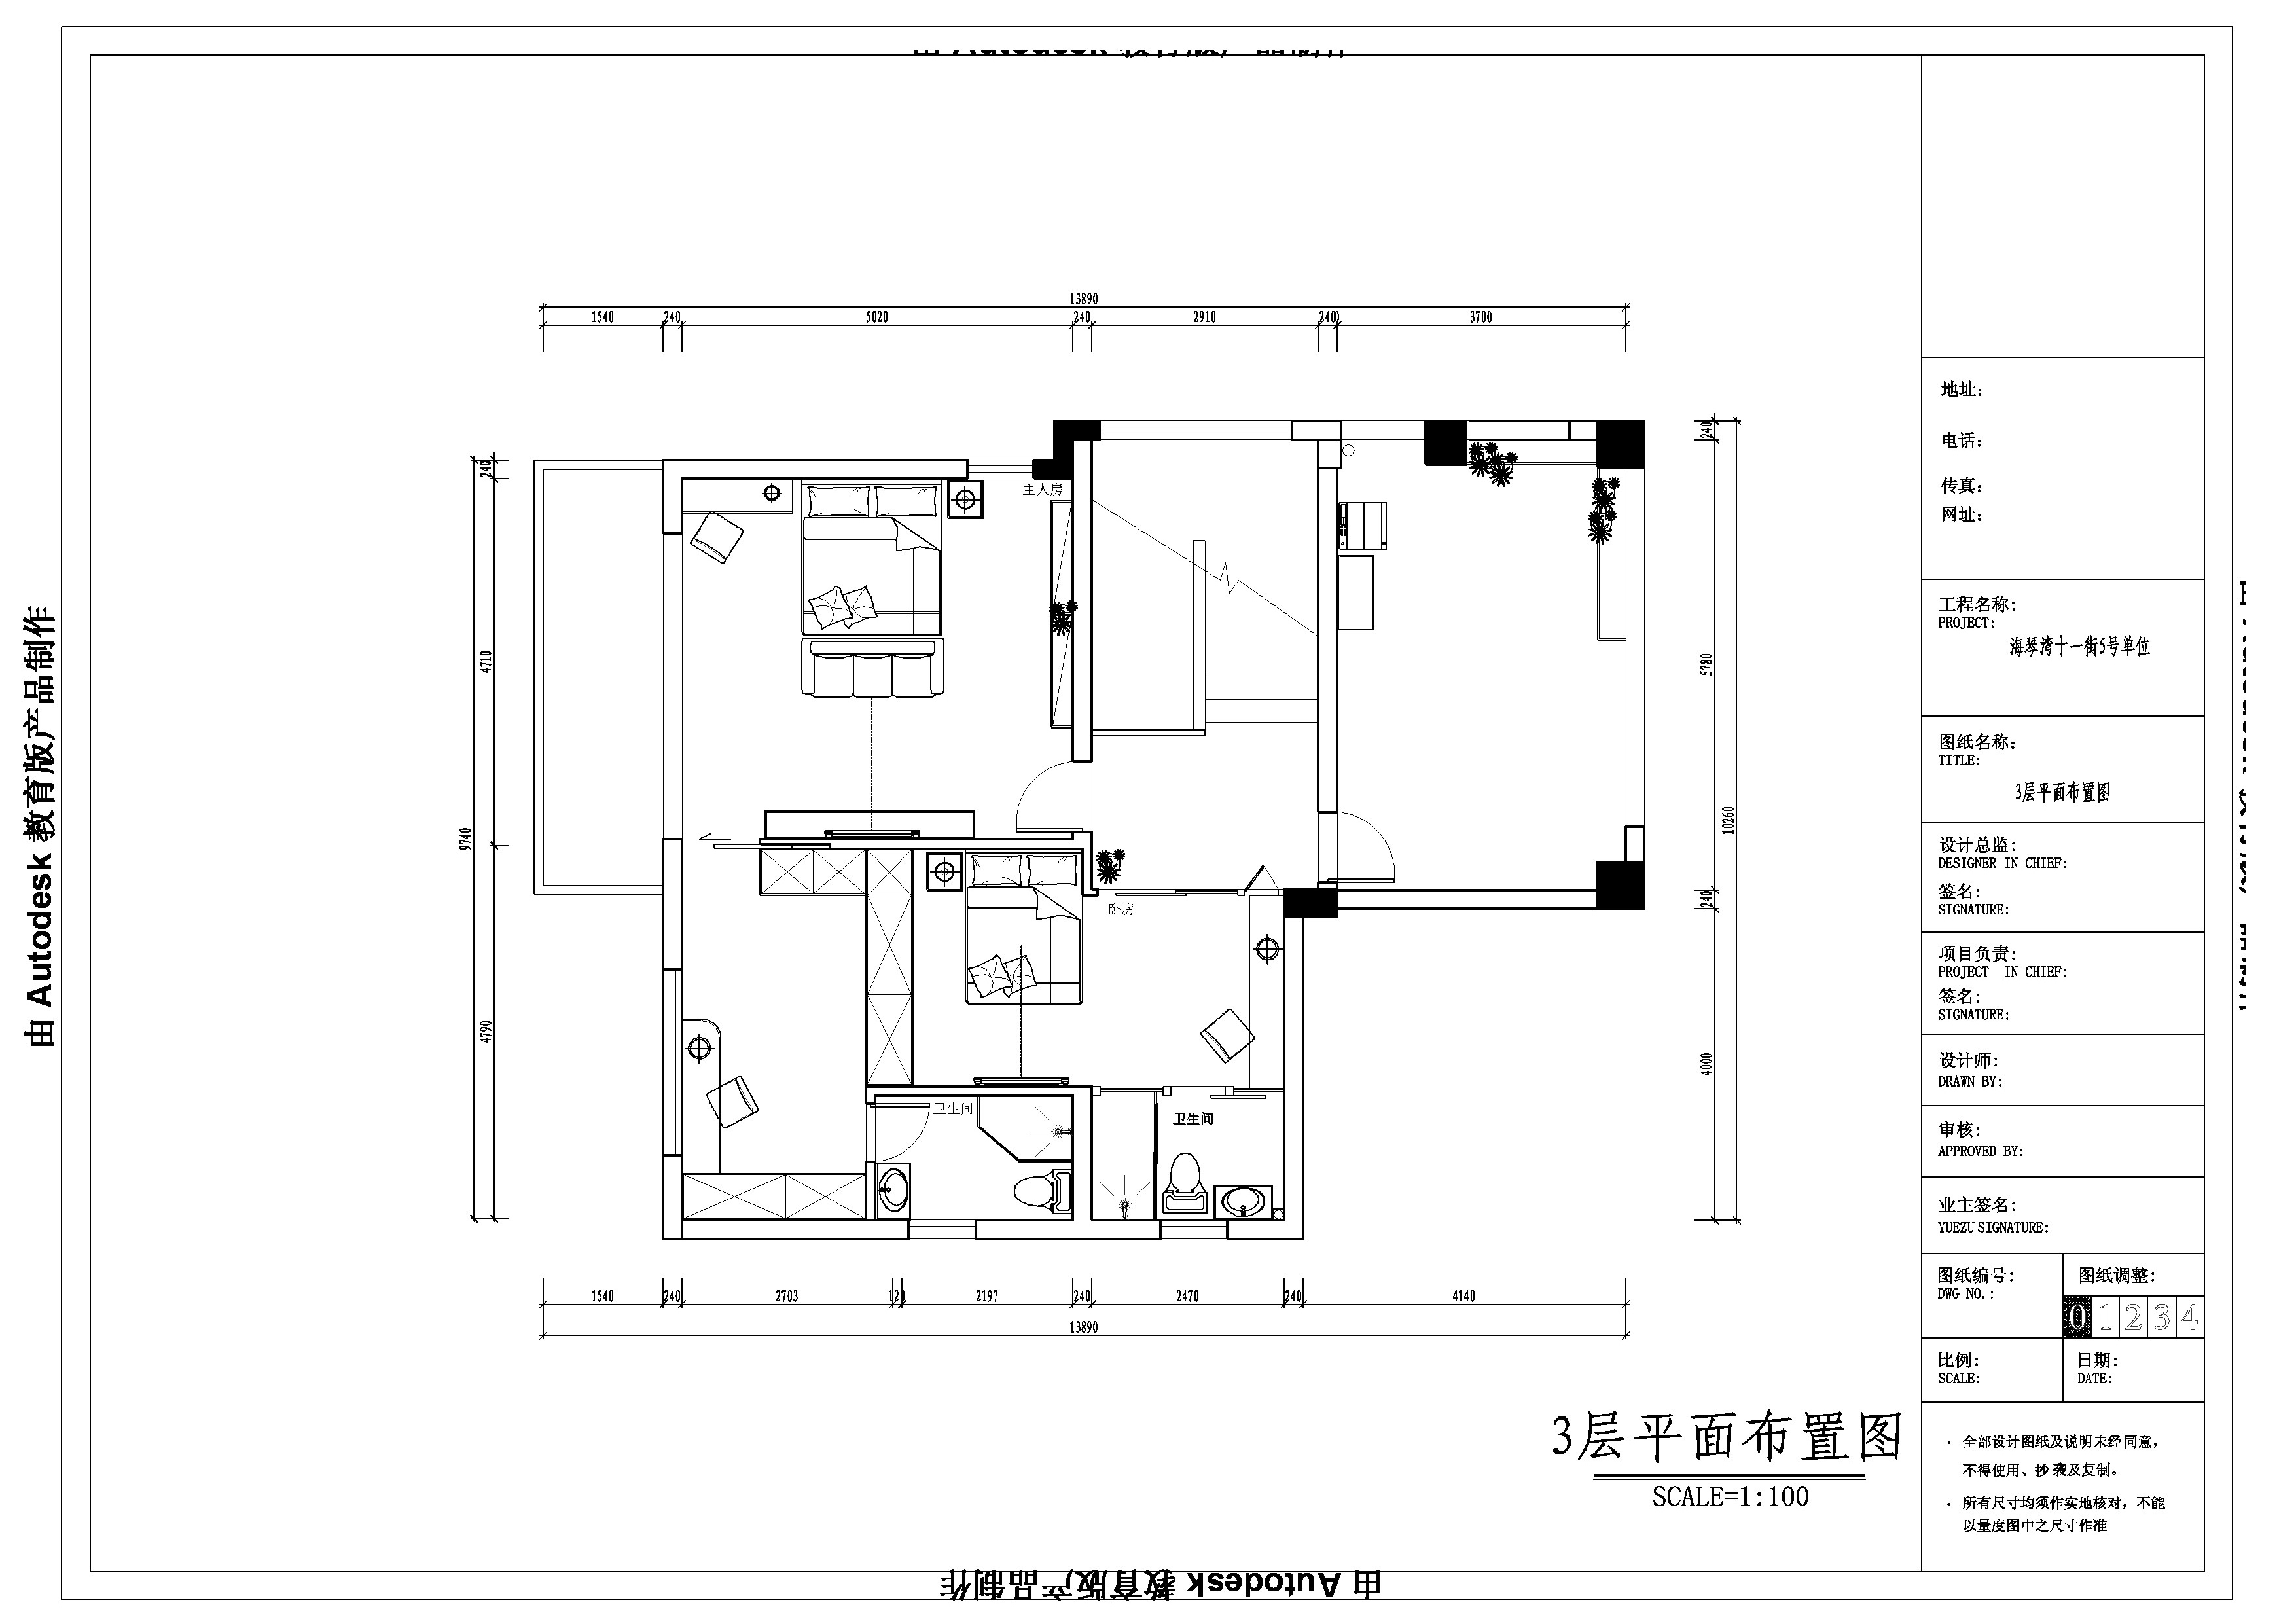 简约 欧式 田园 混搭 三居 别墅 客厅 卧室 厨房图片来自广州-实创装饰在海琴湾的分享